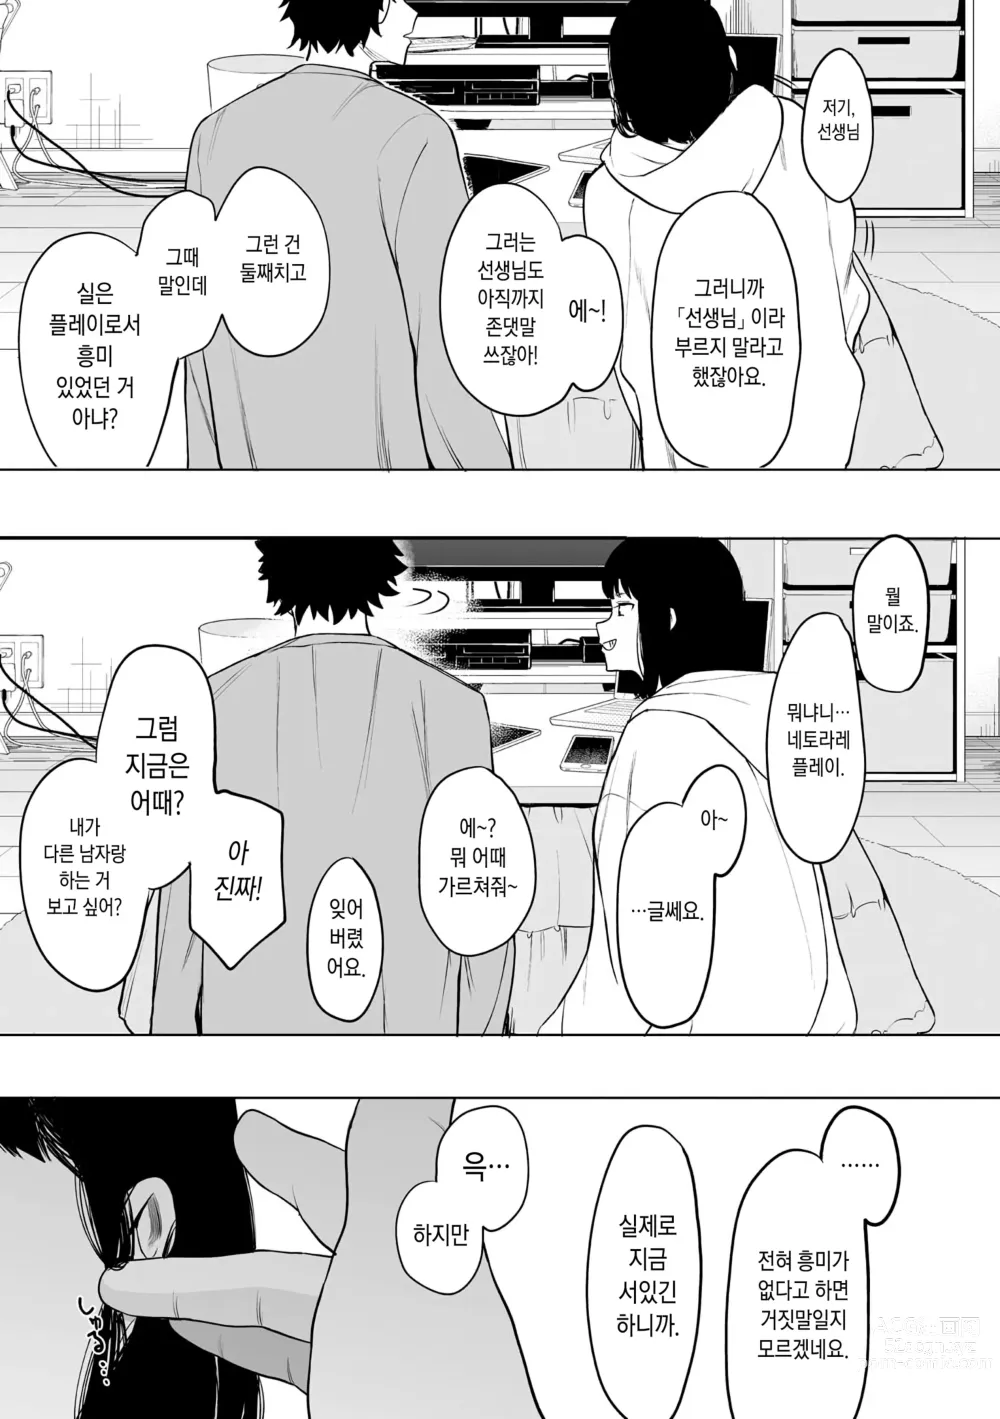 Page 206 of manga 에이트맨 선생님 덕분에 여친이 생겼습니다!